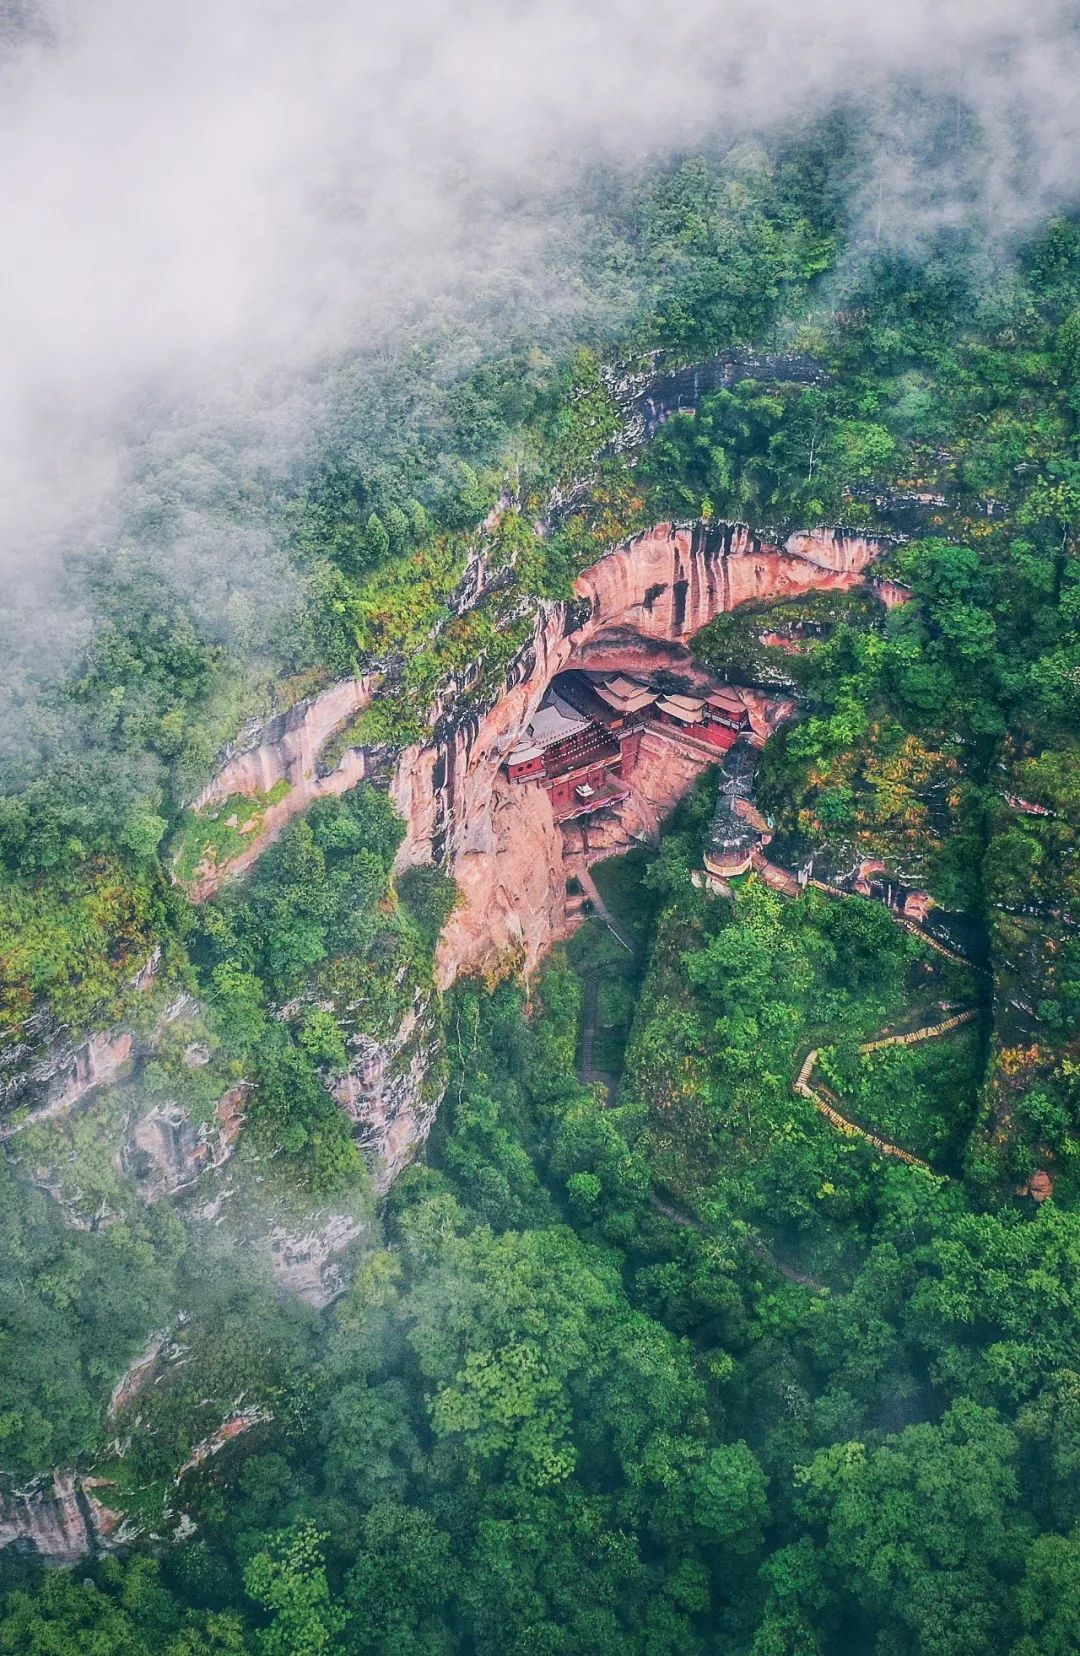  甘露寺，修建于丹霞山体中部，景色奇绝 。 图/视觉中国